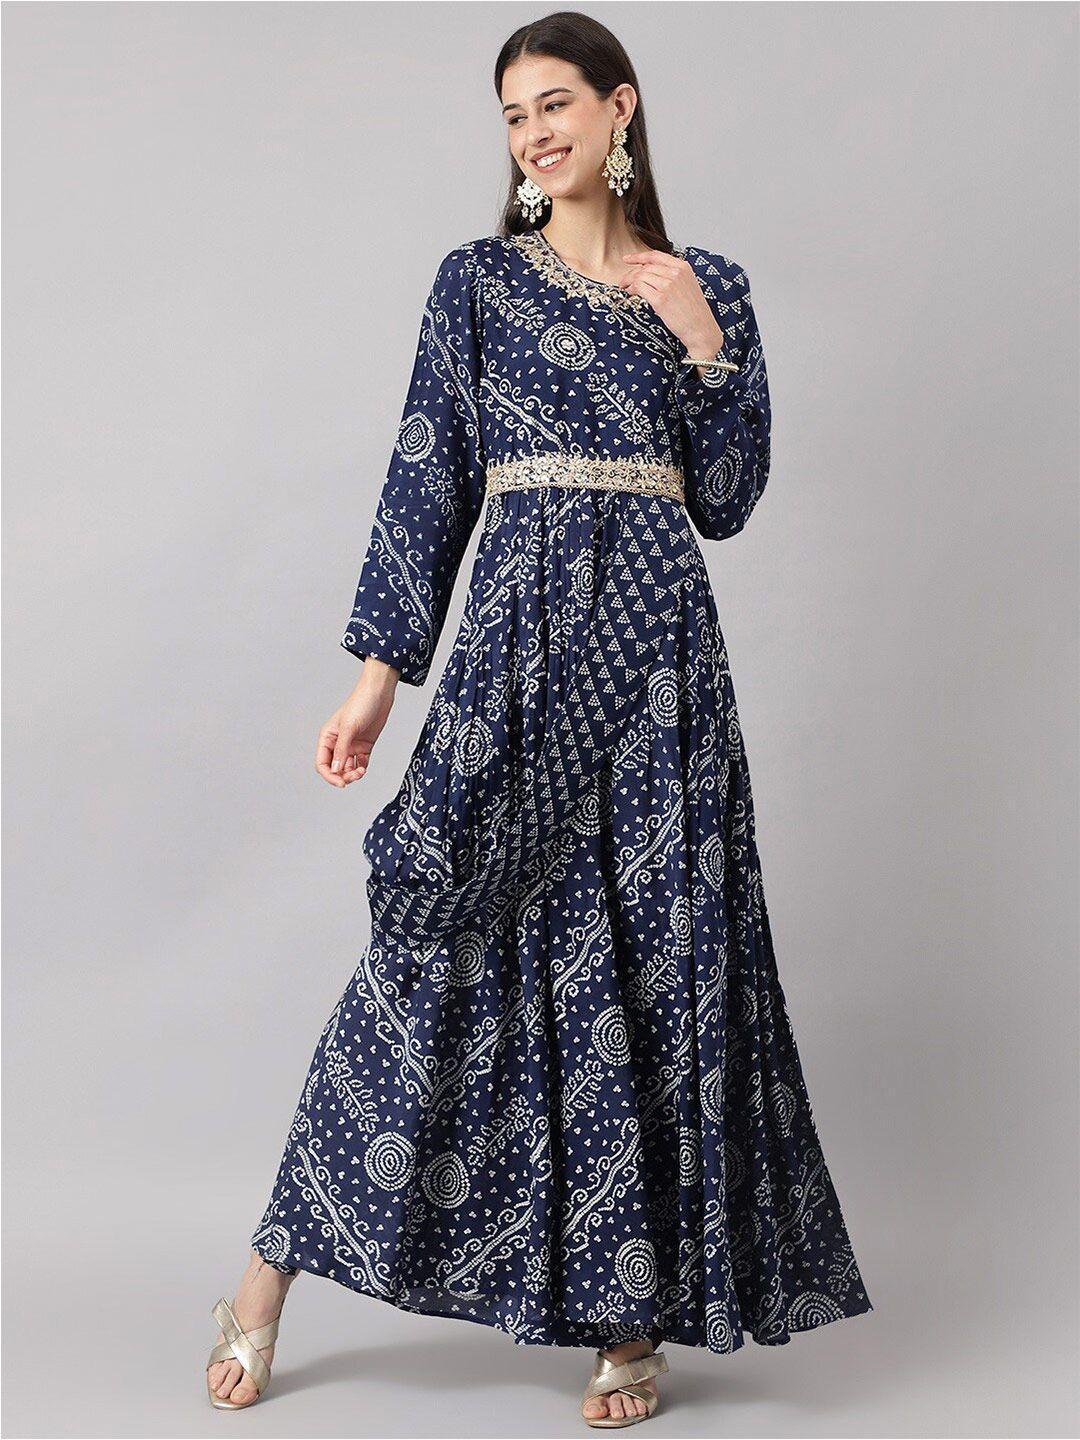 divena-navy-blue-floral-maxi-dress